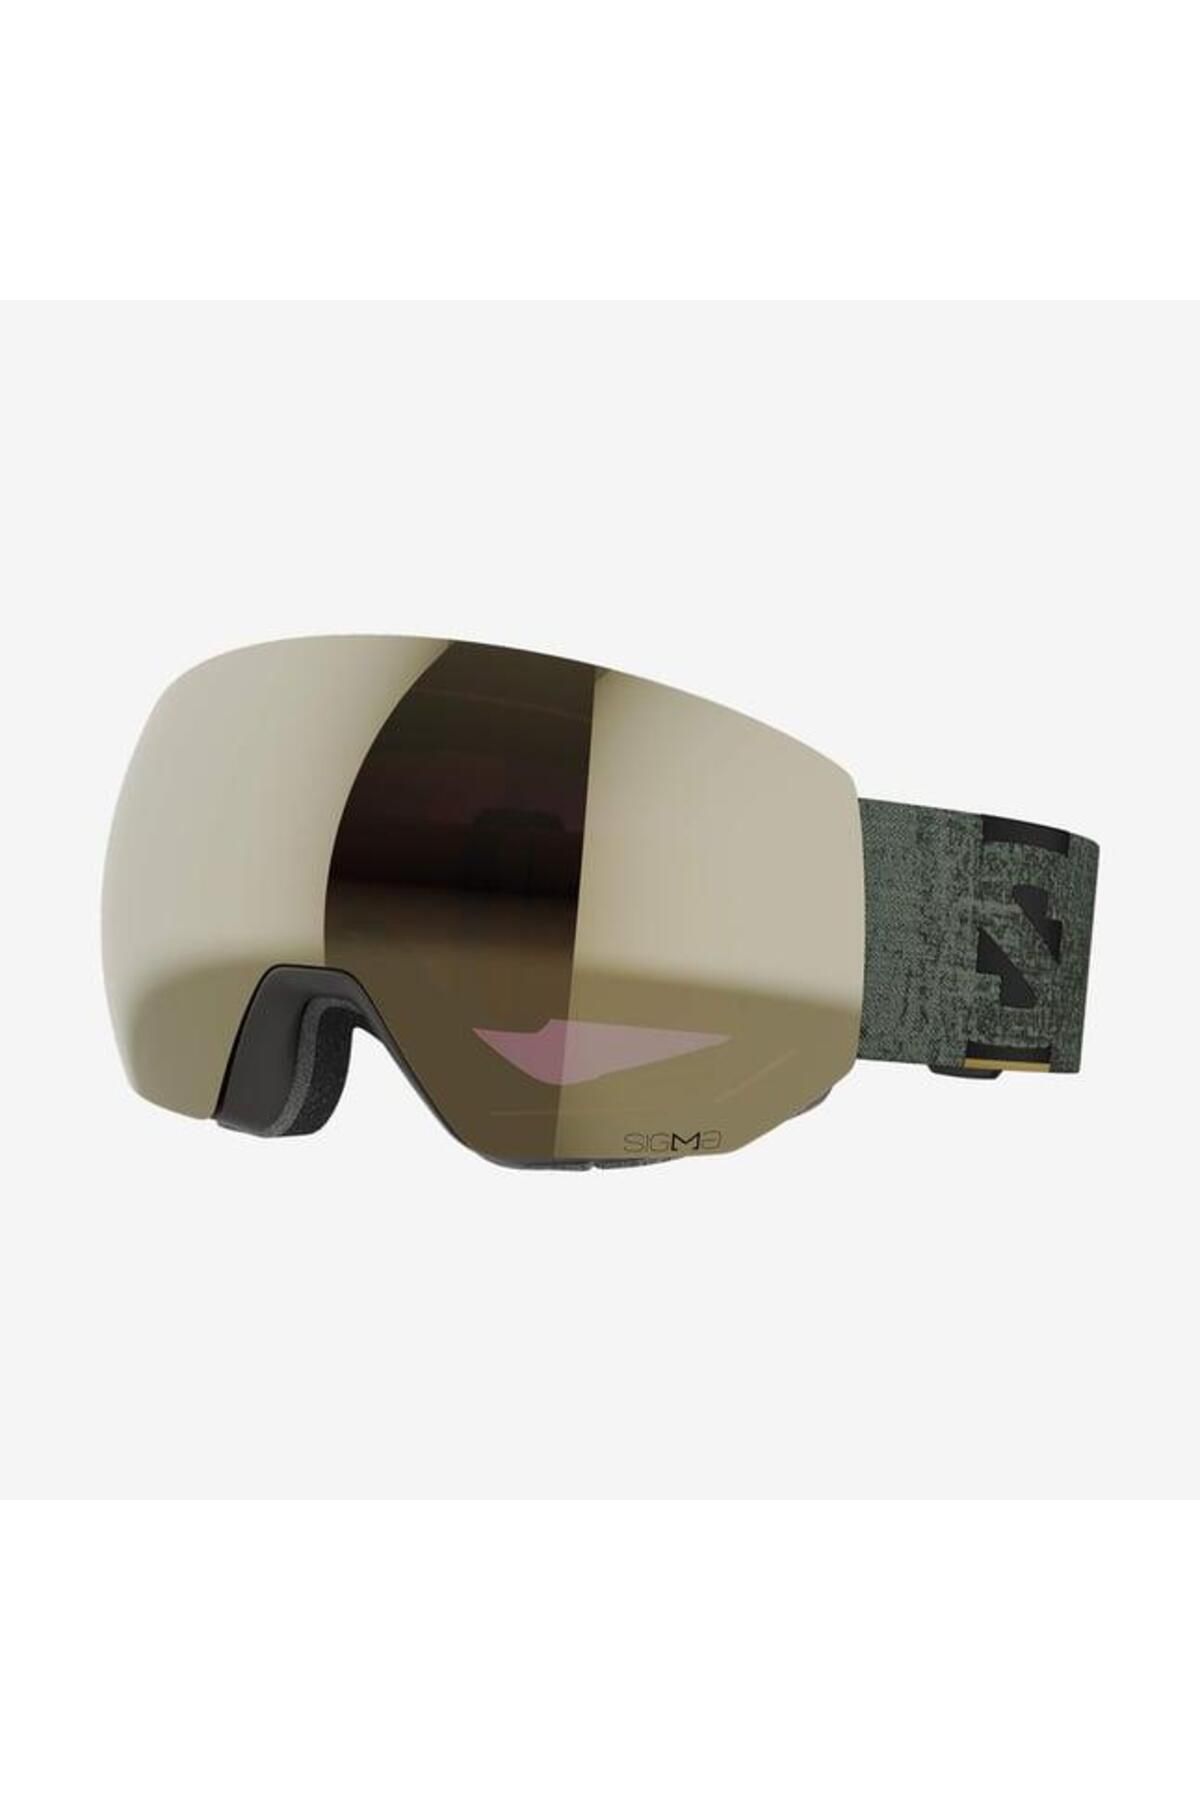 Salomon Radium Pro Sigma Kayak Gözlüğü